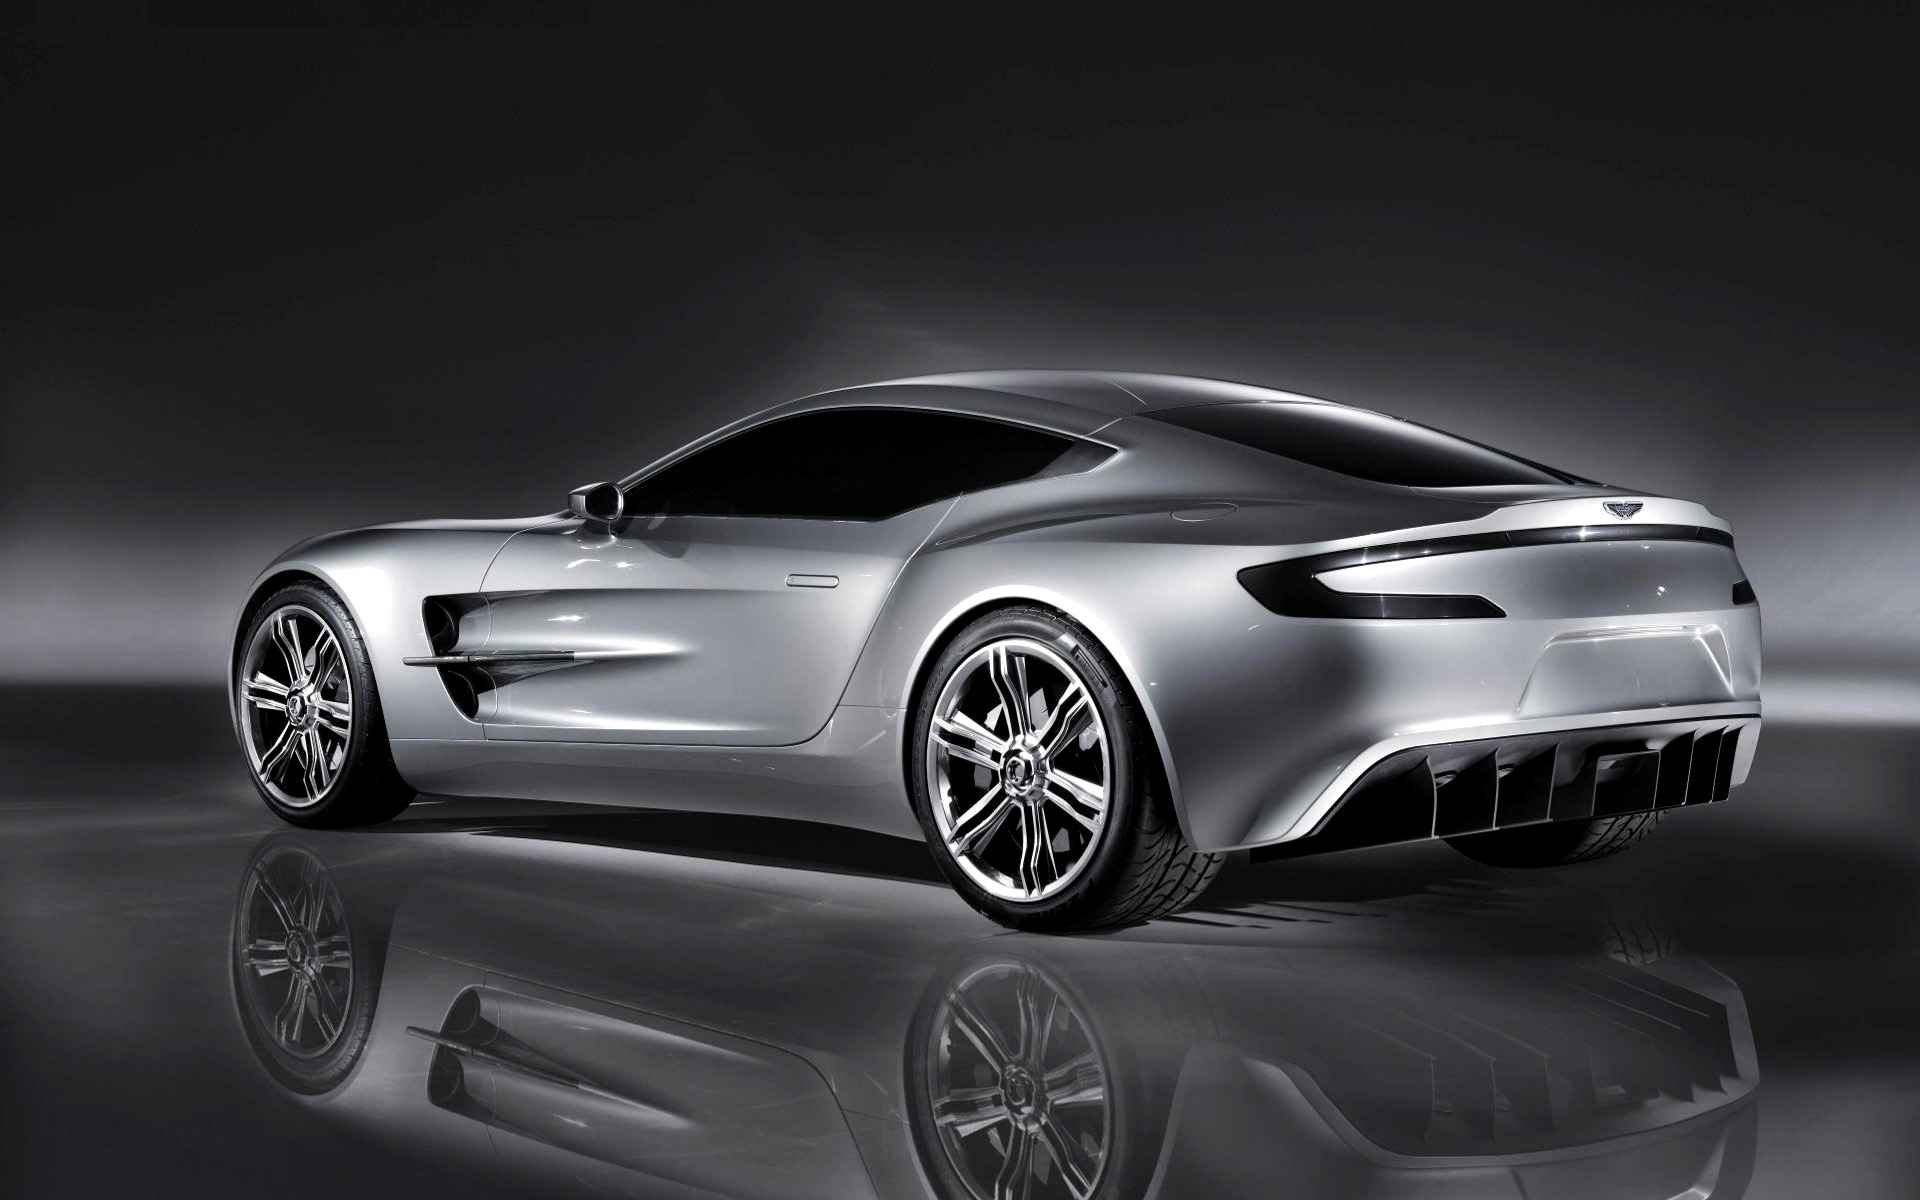  2009 Aston Martin One-77 Concept Wallpaper.